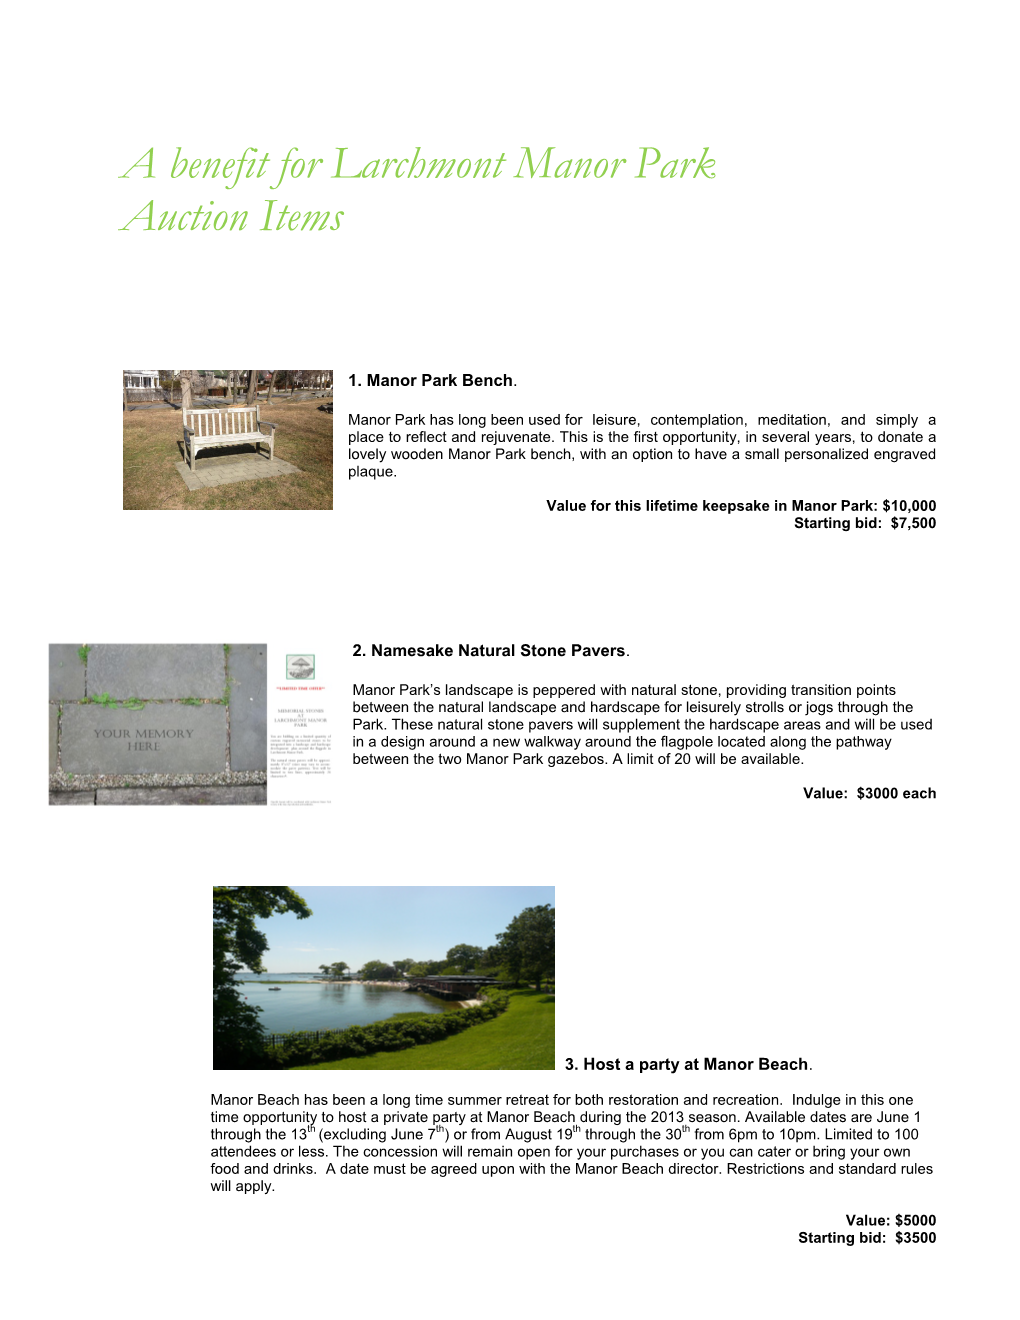 A Benefit for Larchmont Manor Park Auction Items